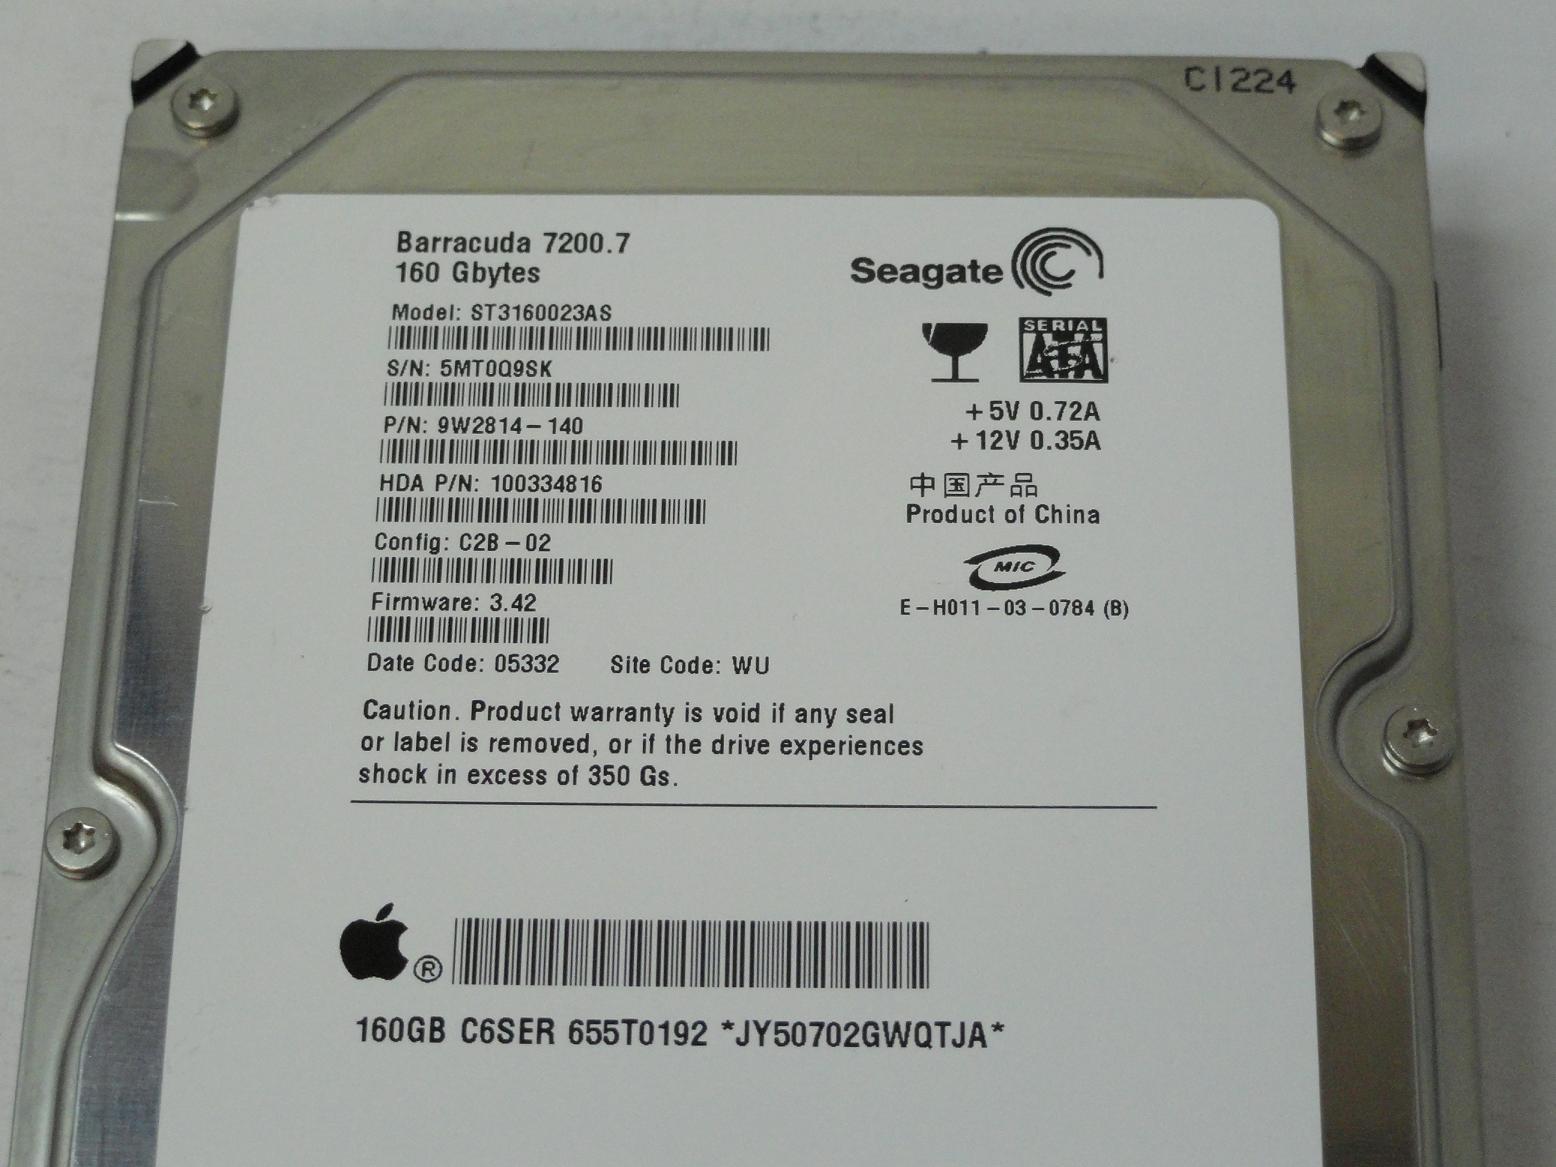 PR24292_9W2814-140_Seagate Apple 160GB SATA 7200rpm 3.5in HDD - Image3